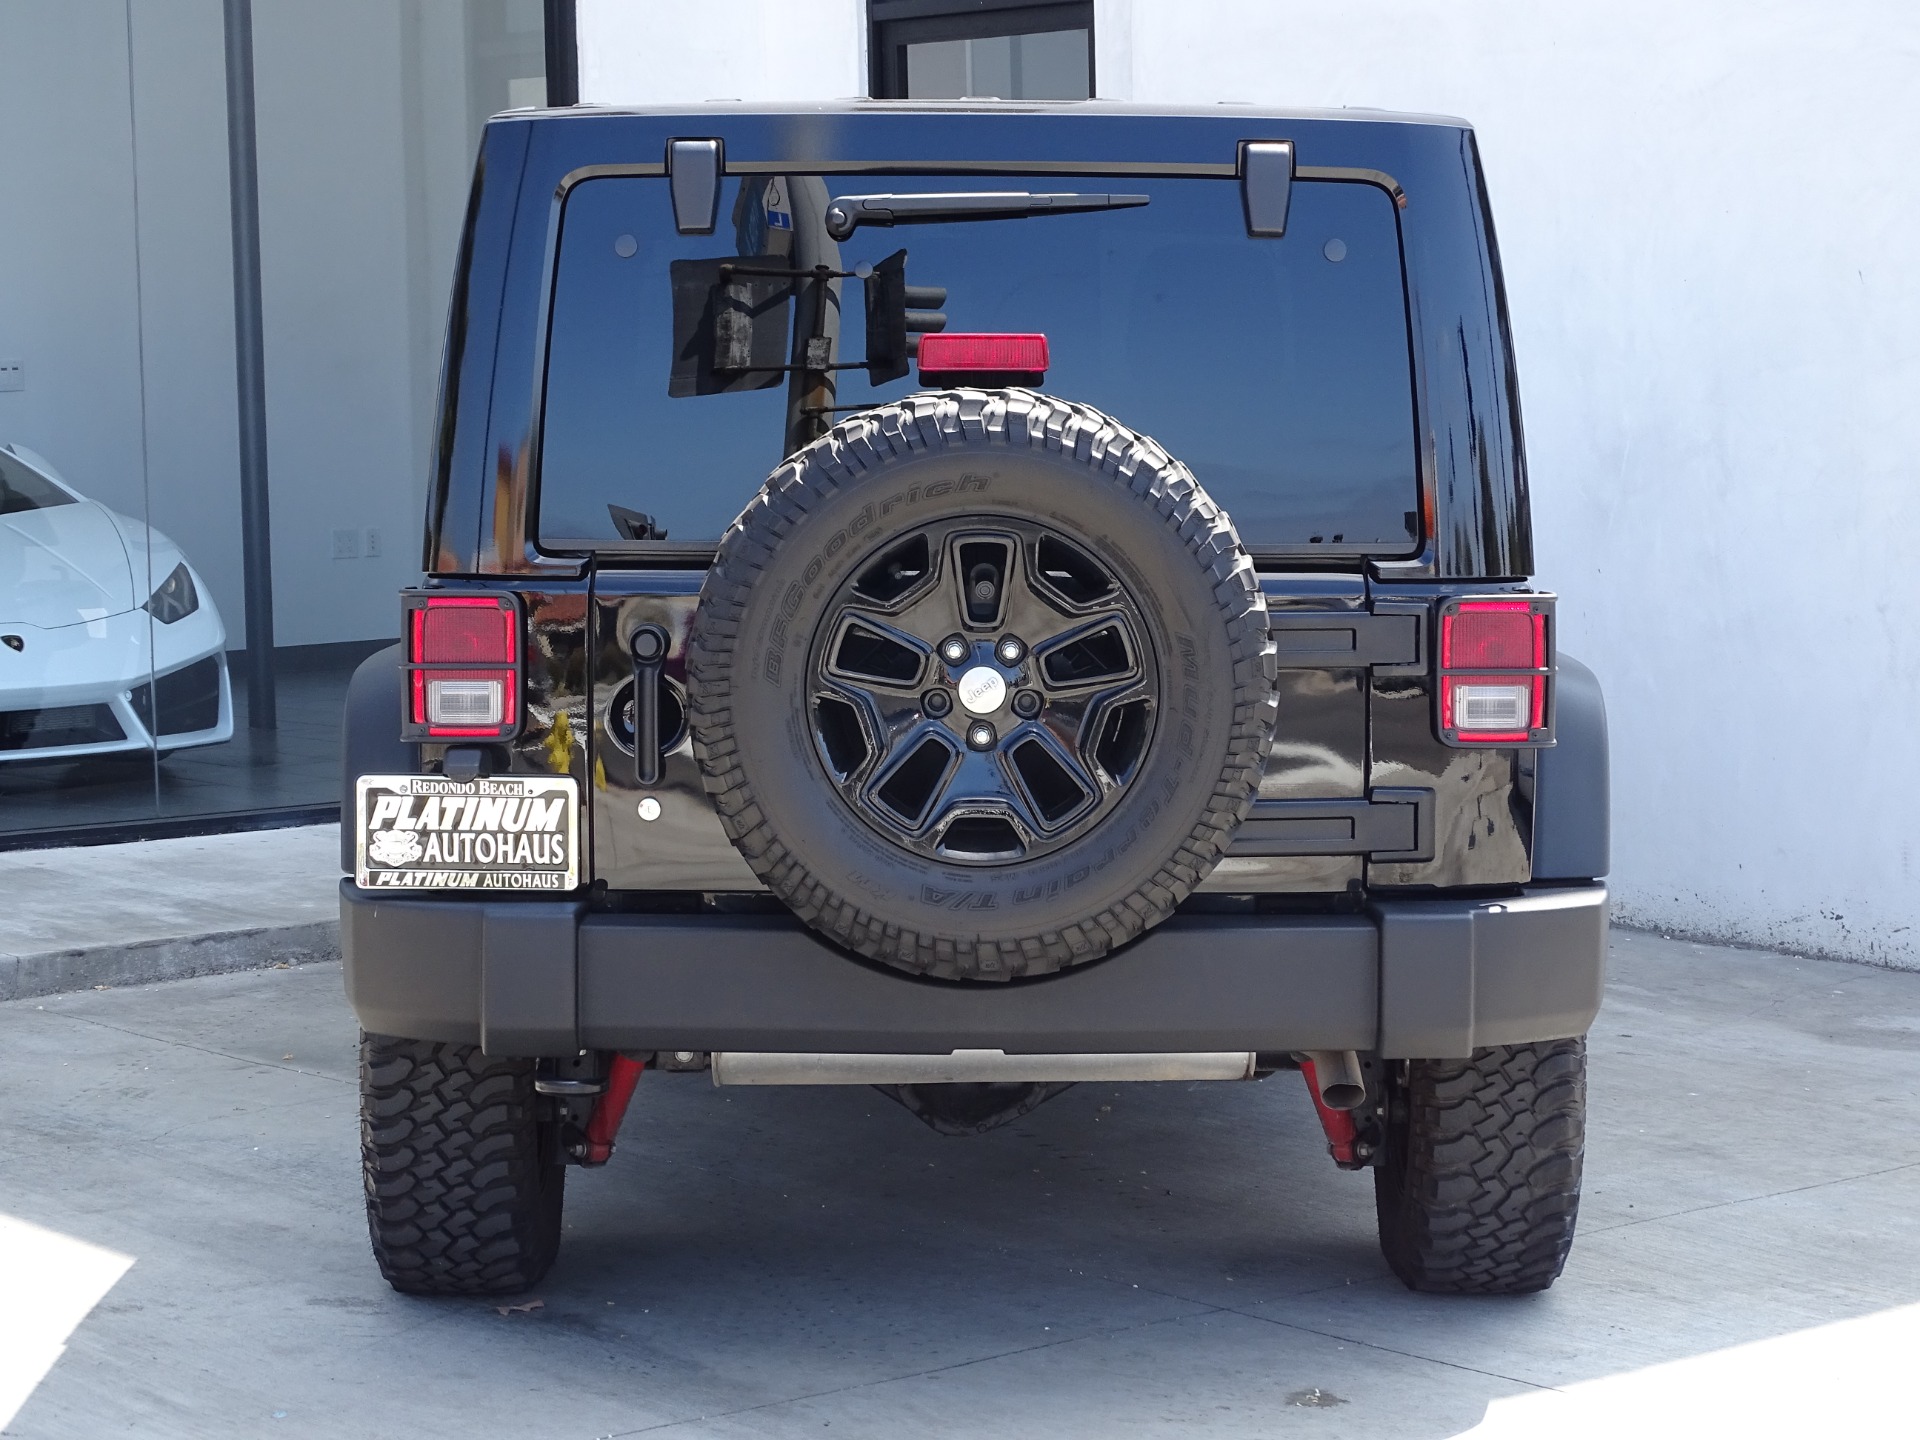 2015 Jeep Wrangler Unlimited Rubicon Stock # 6580 for sale near Redondo  Beach, CA | CA Jeep Dealer